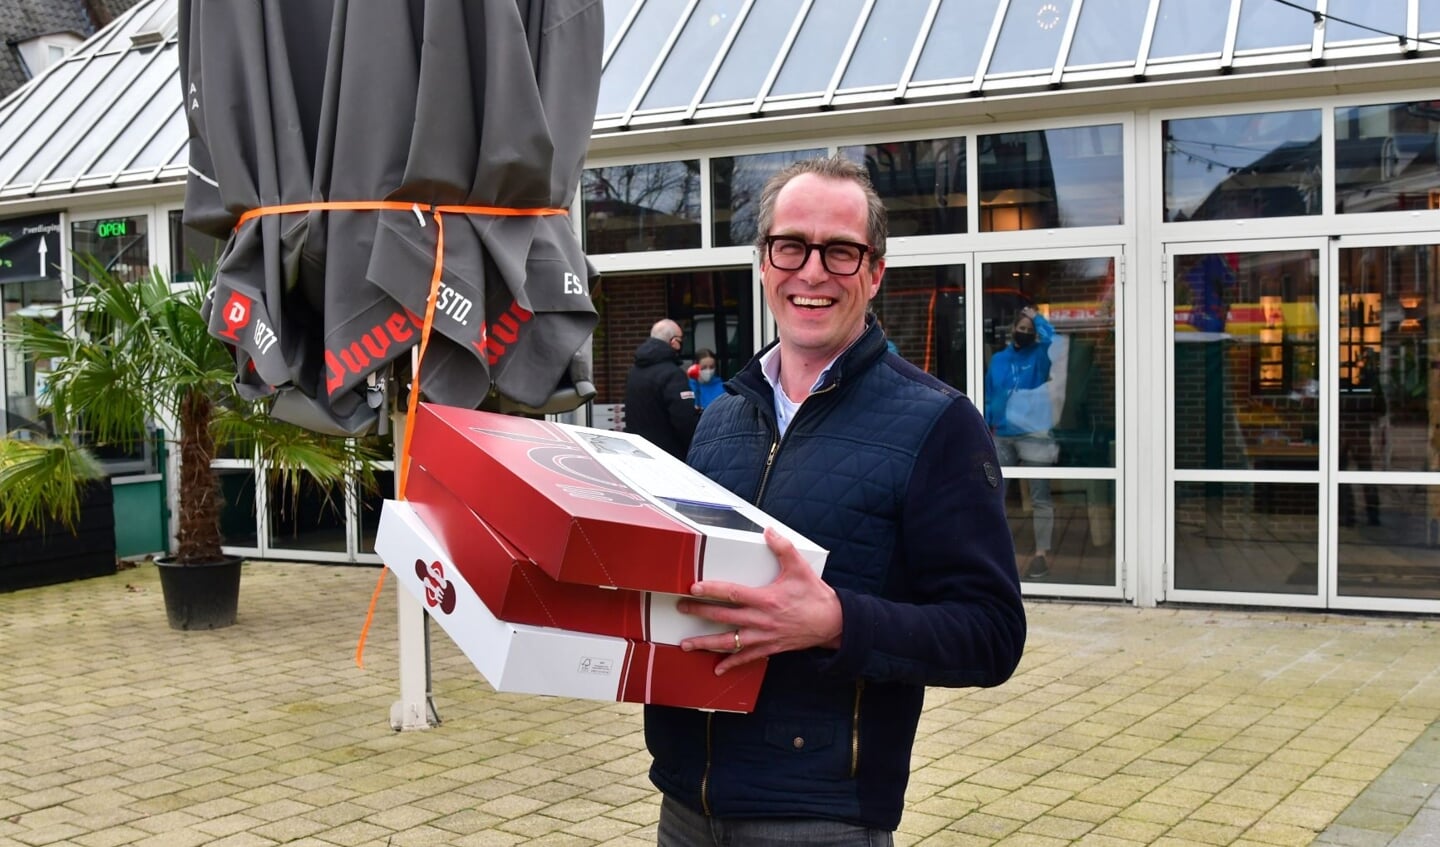 Ook wethouder Harke Dijksterhuis hielp mee om de dozen met lekkers rond te brengen. 